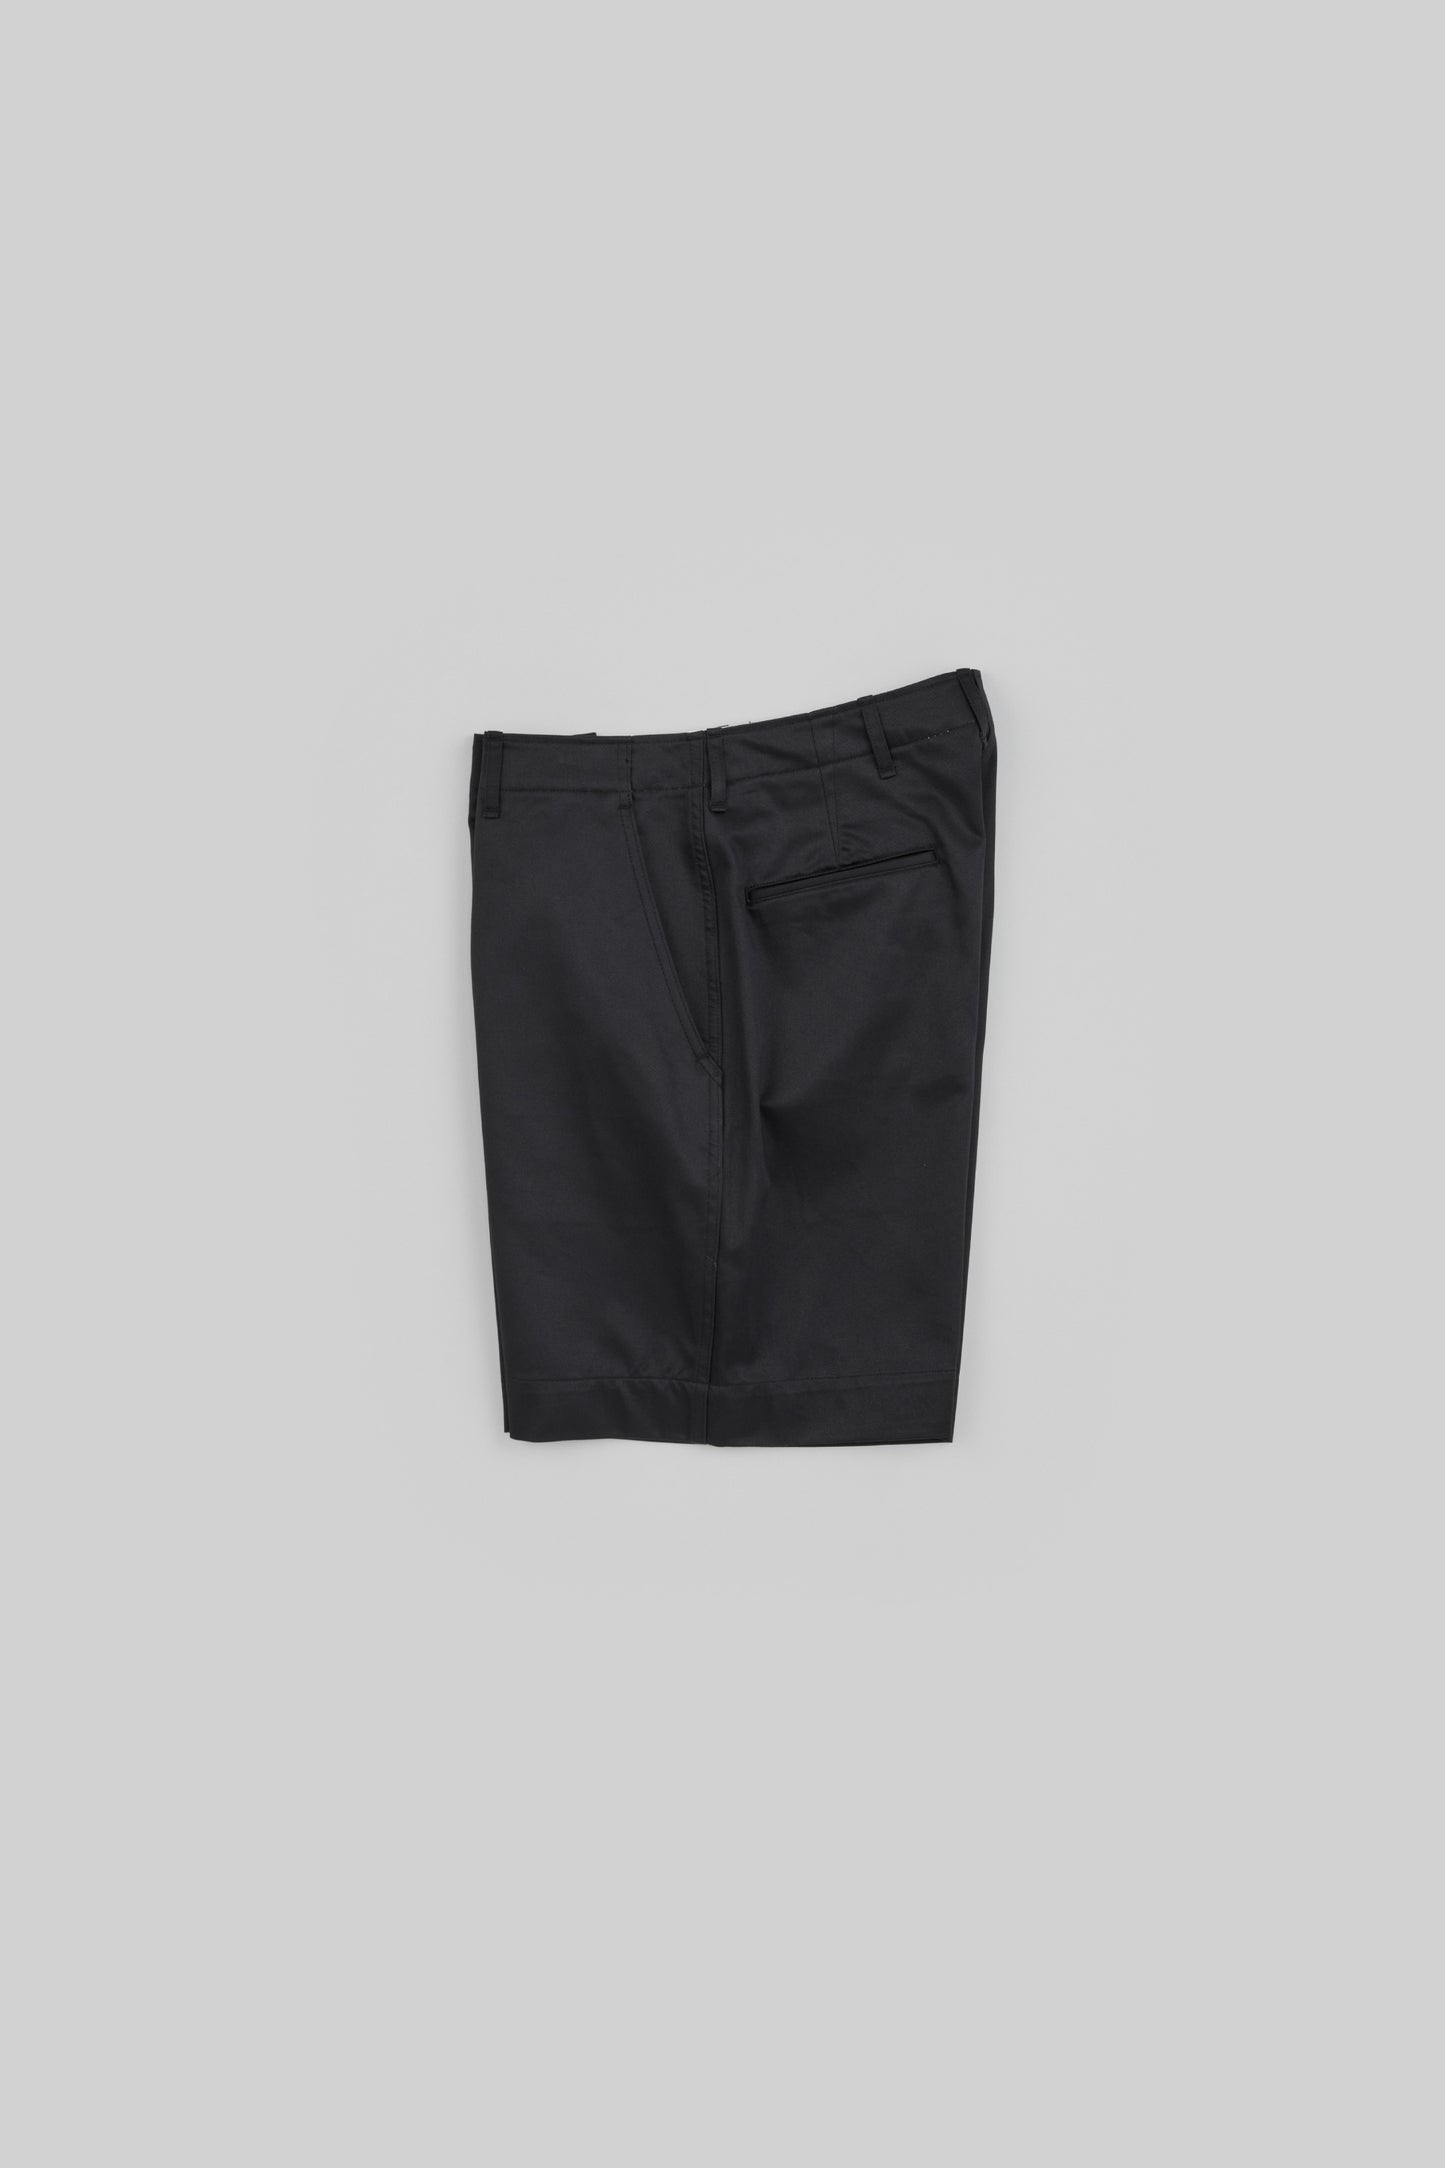 Weapon Chino Cloth Shorts